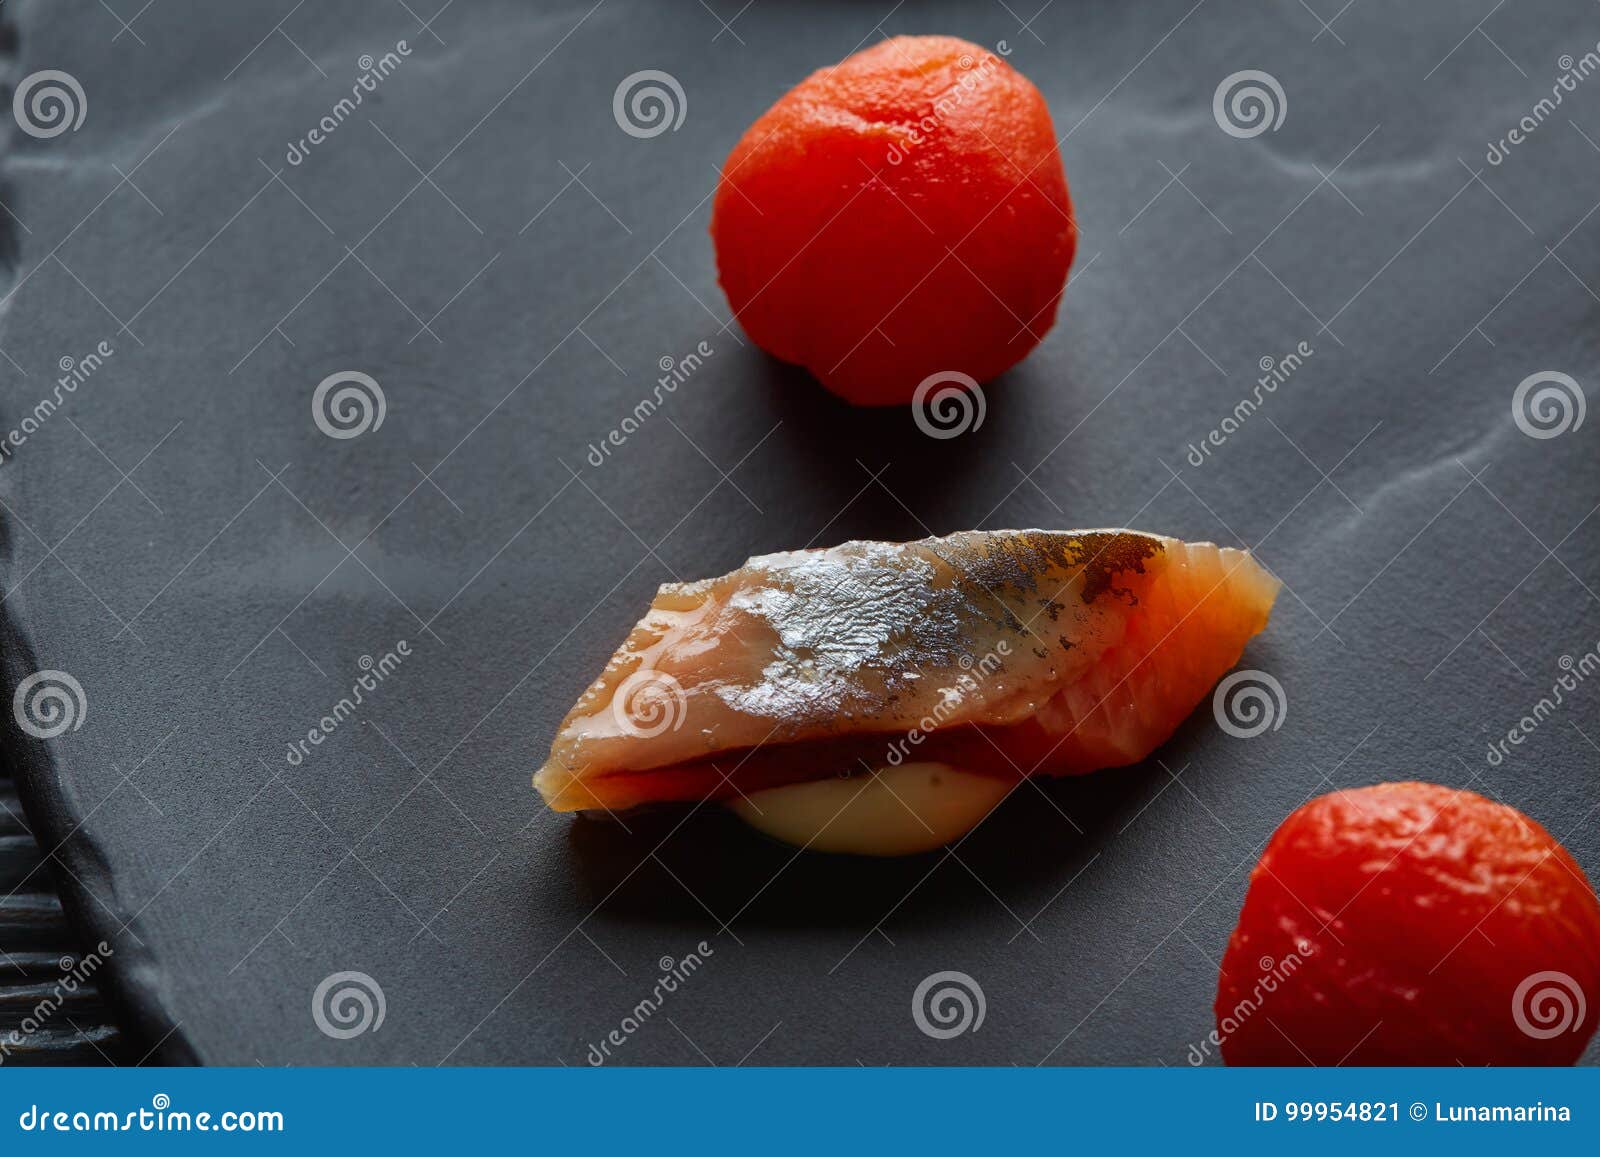 bota sardine with osmotized tomatoes macro